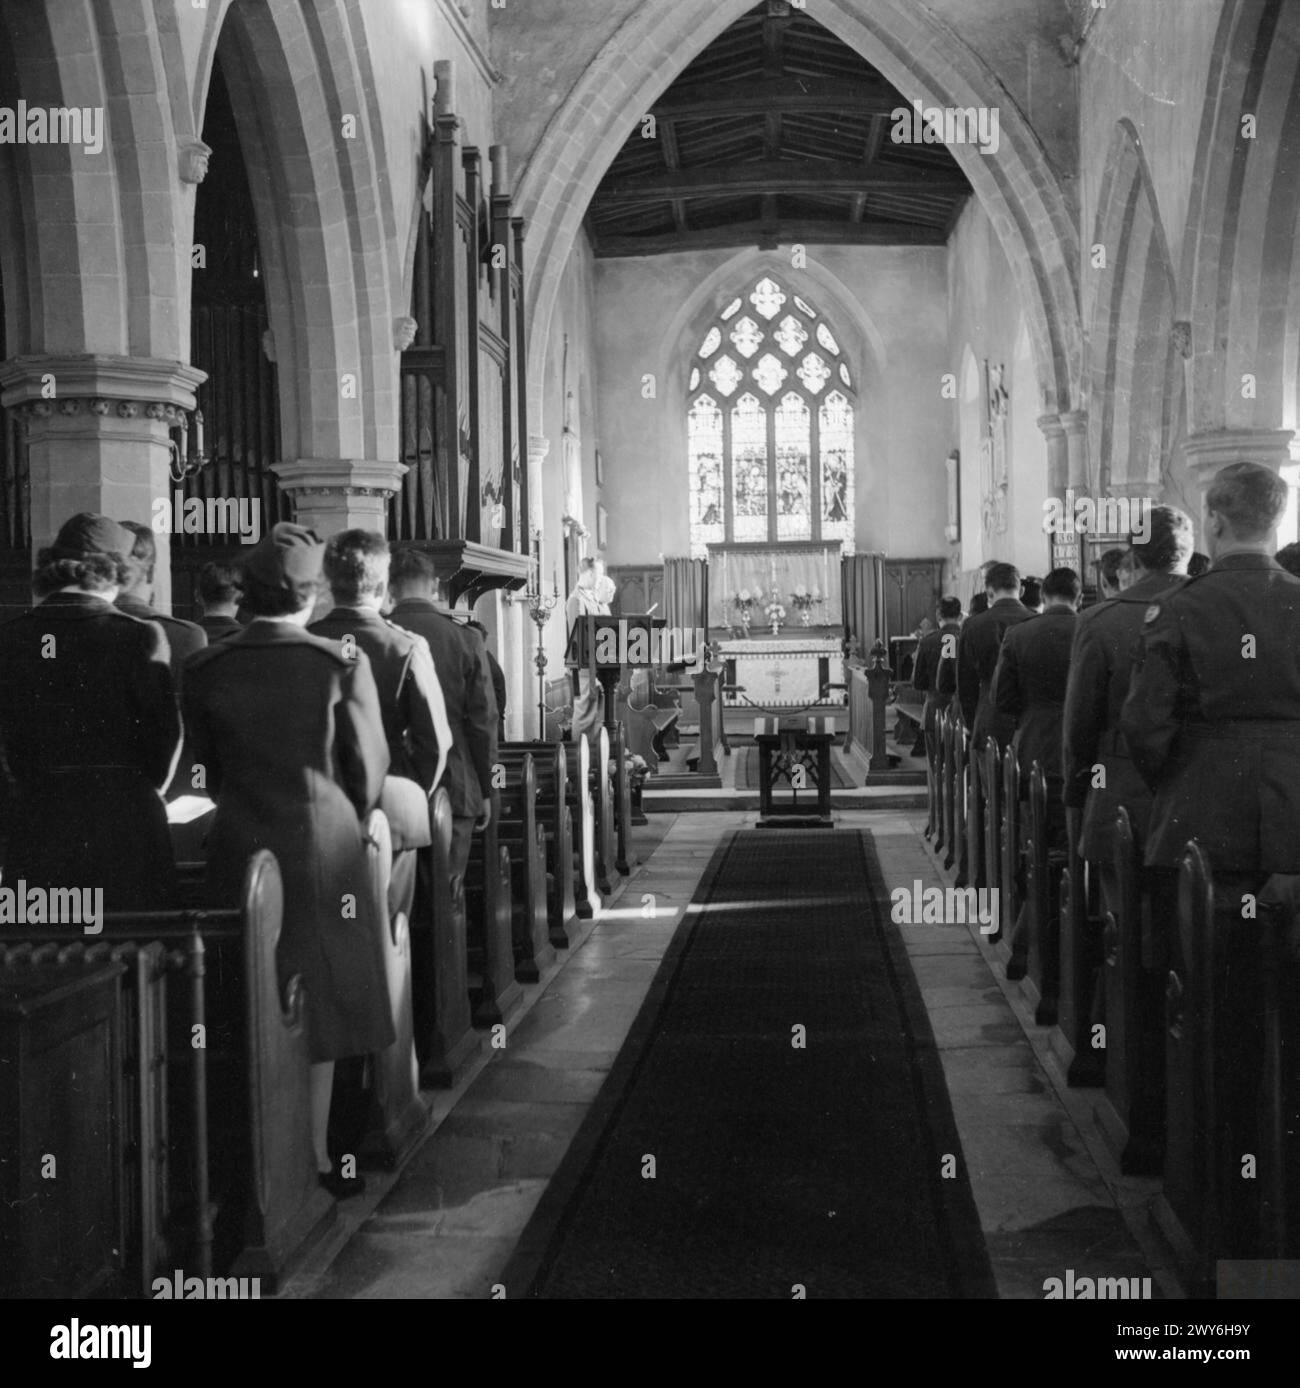 IL GIORNO DEL RINGRAZIAMENTO SI SVOLGE NELLA CHIESA DI CAMPAGNA INGLESE: AMERICANS IN CRANSLEY, NORTHAMPTONSHIRE, INGHILTERRA, Regno Unito, 23 NOVEMBRE 1944 - Una vista presa giù dalla navata della chiesa di Cransley, Northamptonshire, guardando verso l'altare, mostrando uomini dell'US Army Air Corps che prendono parte al servizio del Ringraziamento. , Foto Stock